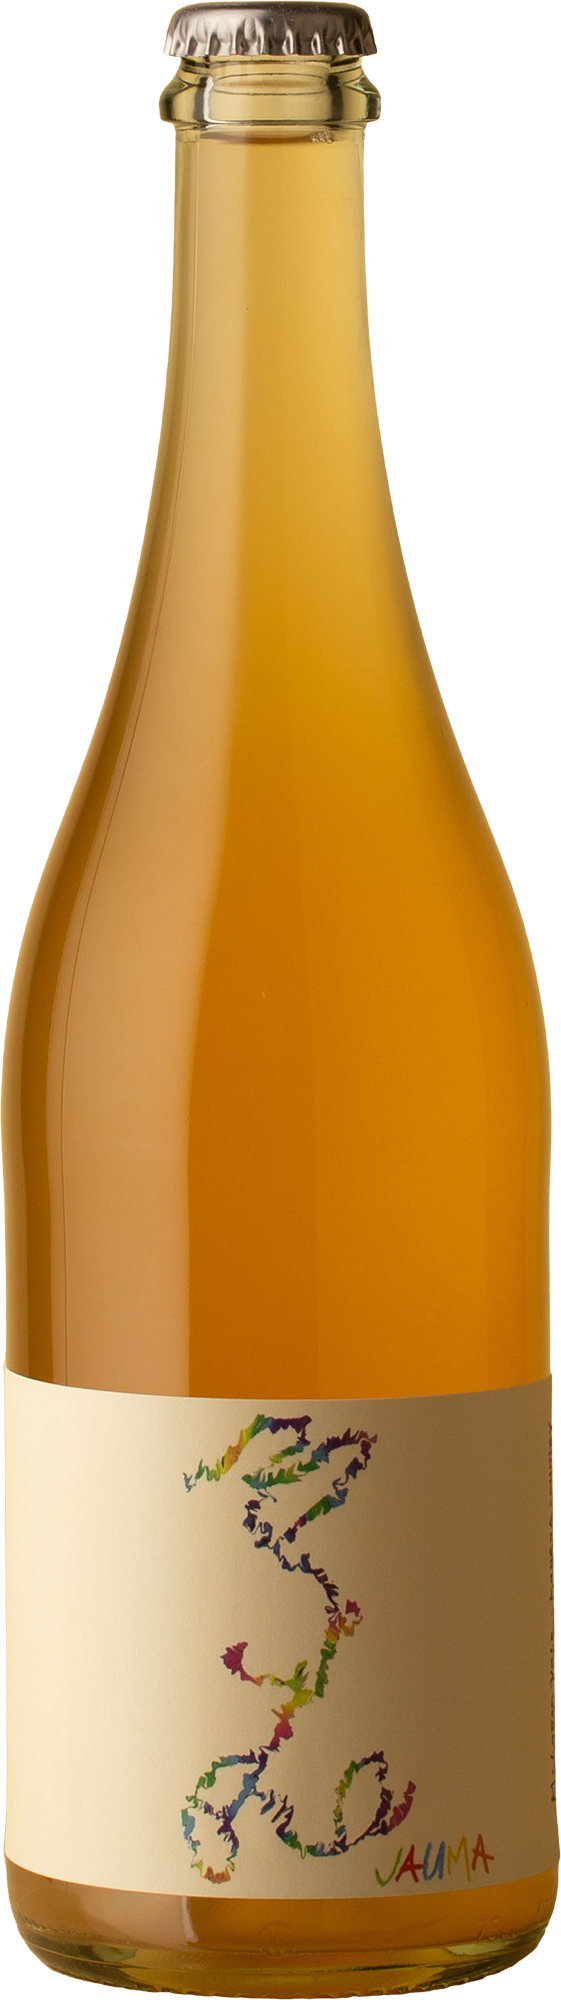 Jauma - Arneis 2021 Orange Wine